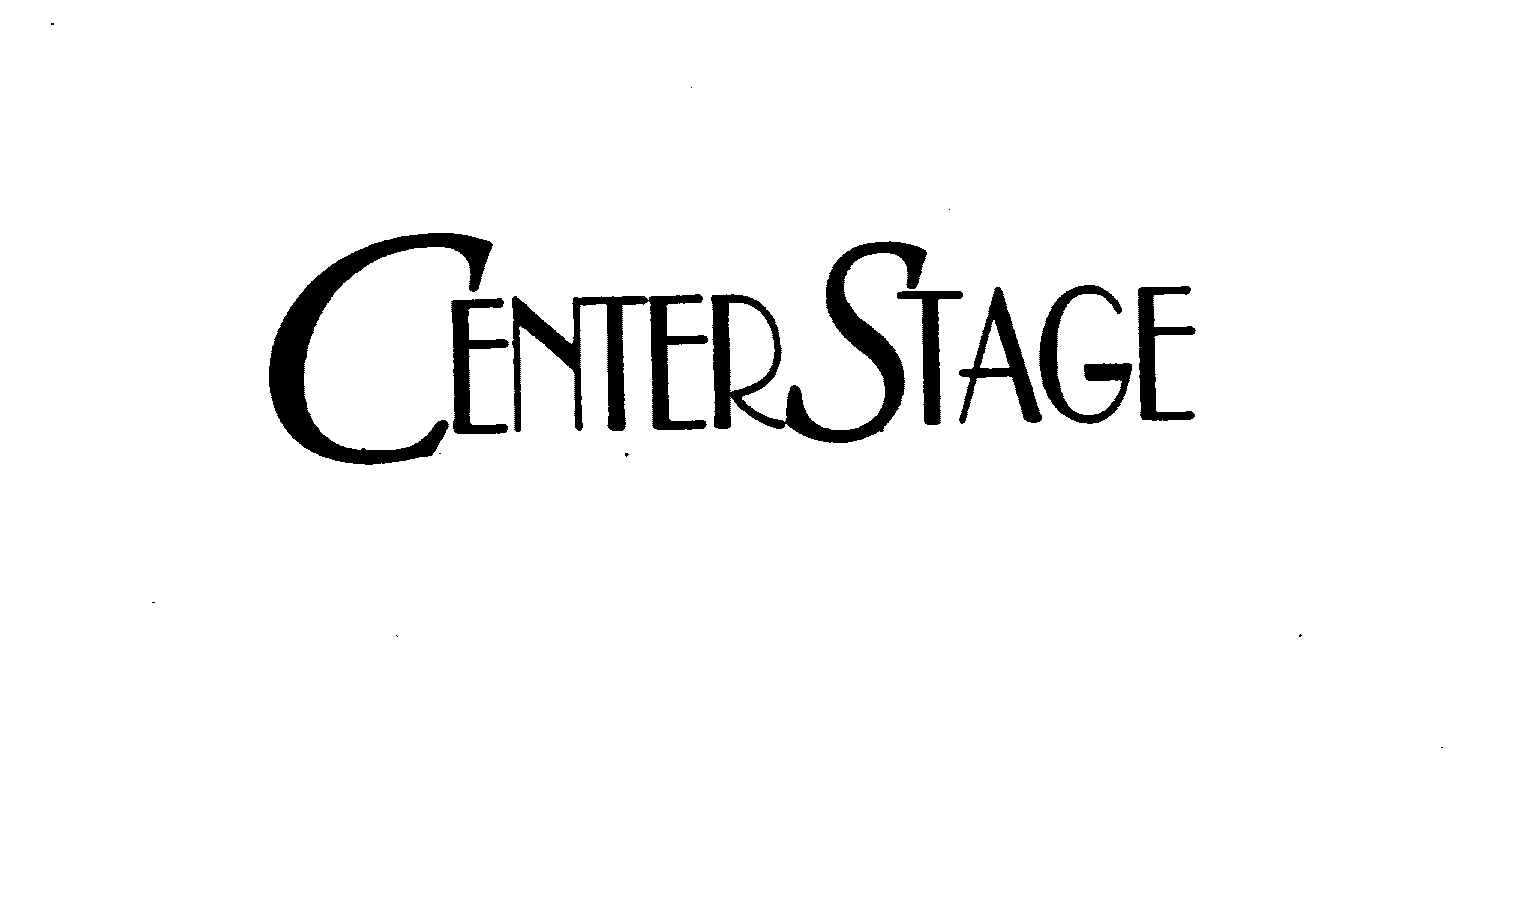 Trademark Logo CENTER STAGE